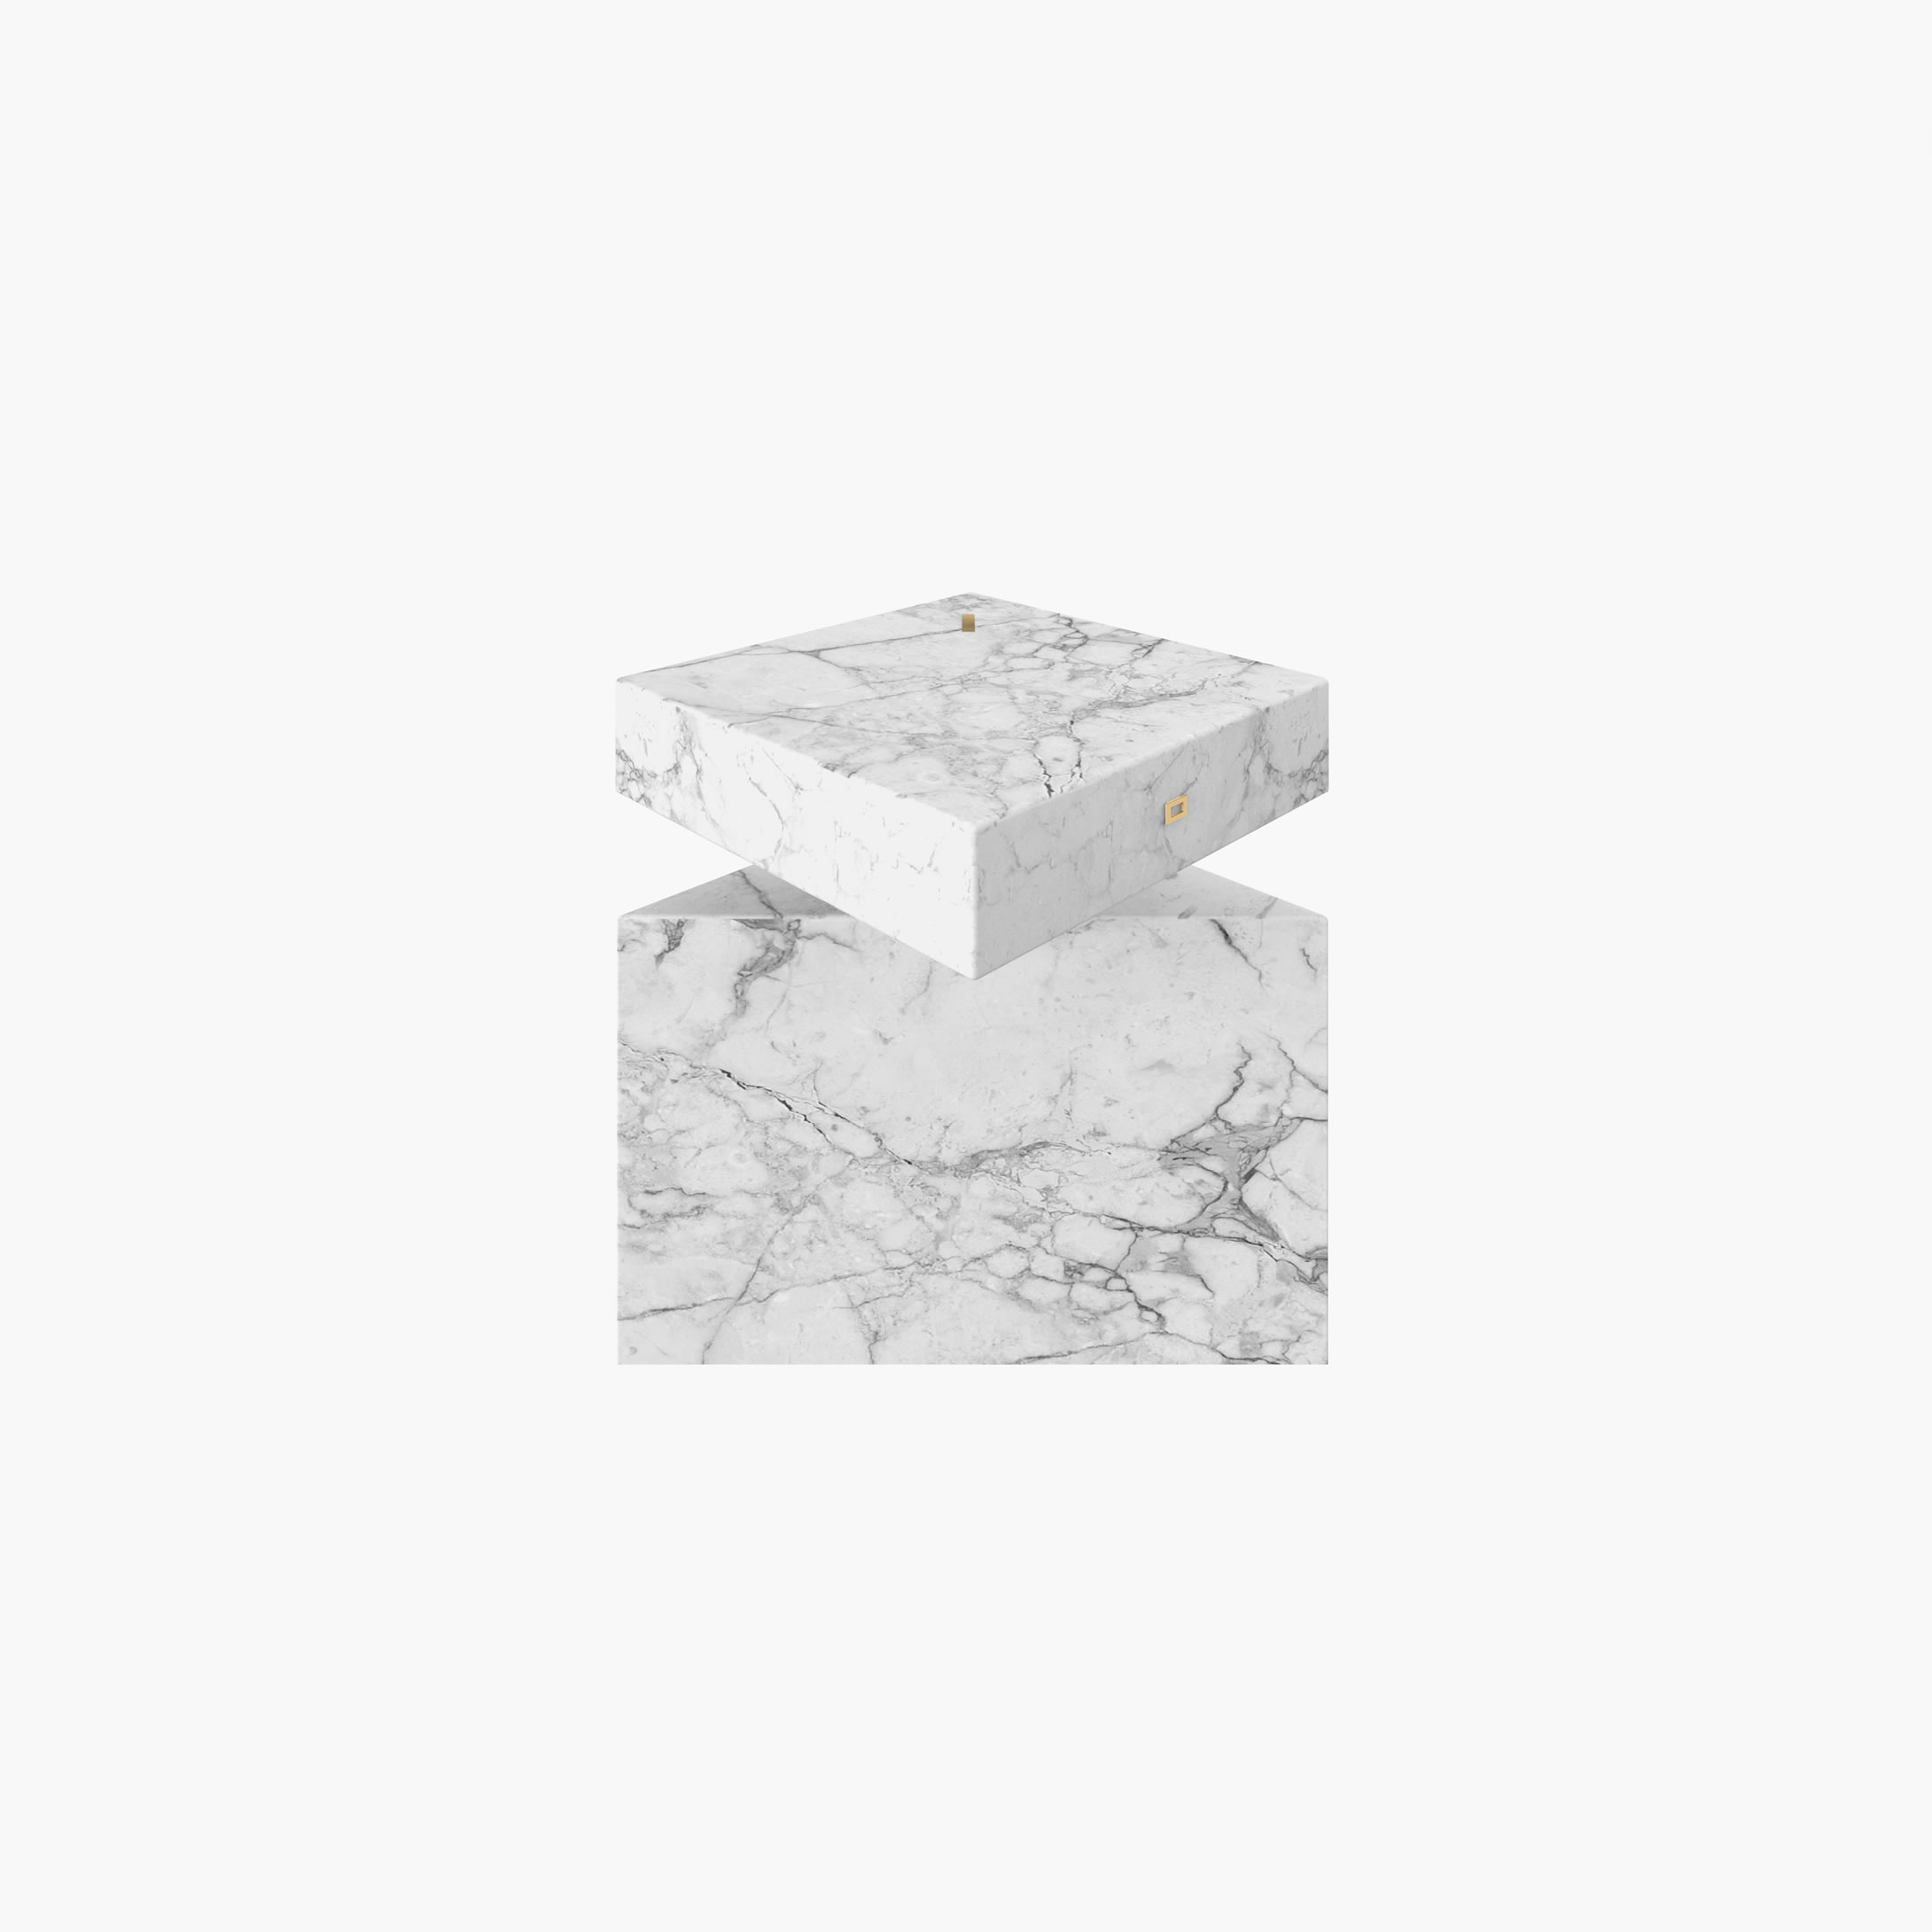 Side Table Cylinder cuboid prism White Arabescato Marble modern Sitting Room designer Side Tables FS 116 FELIX SCHWAKE